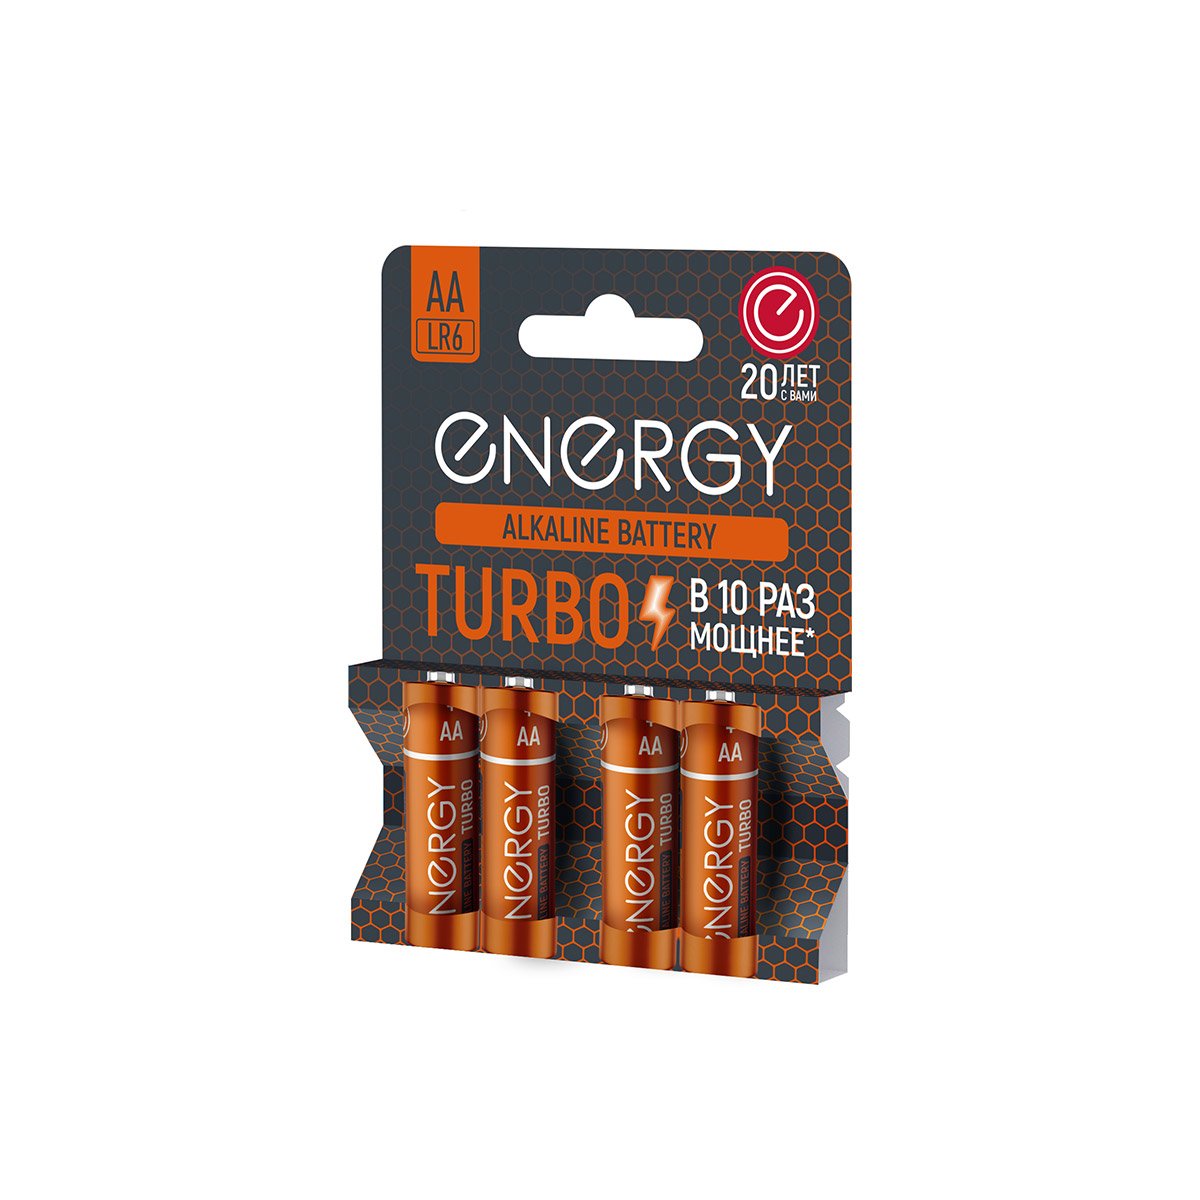   Energy Turbo LR6 4B (A) (107051)